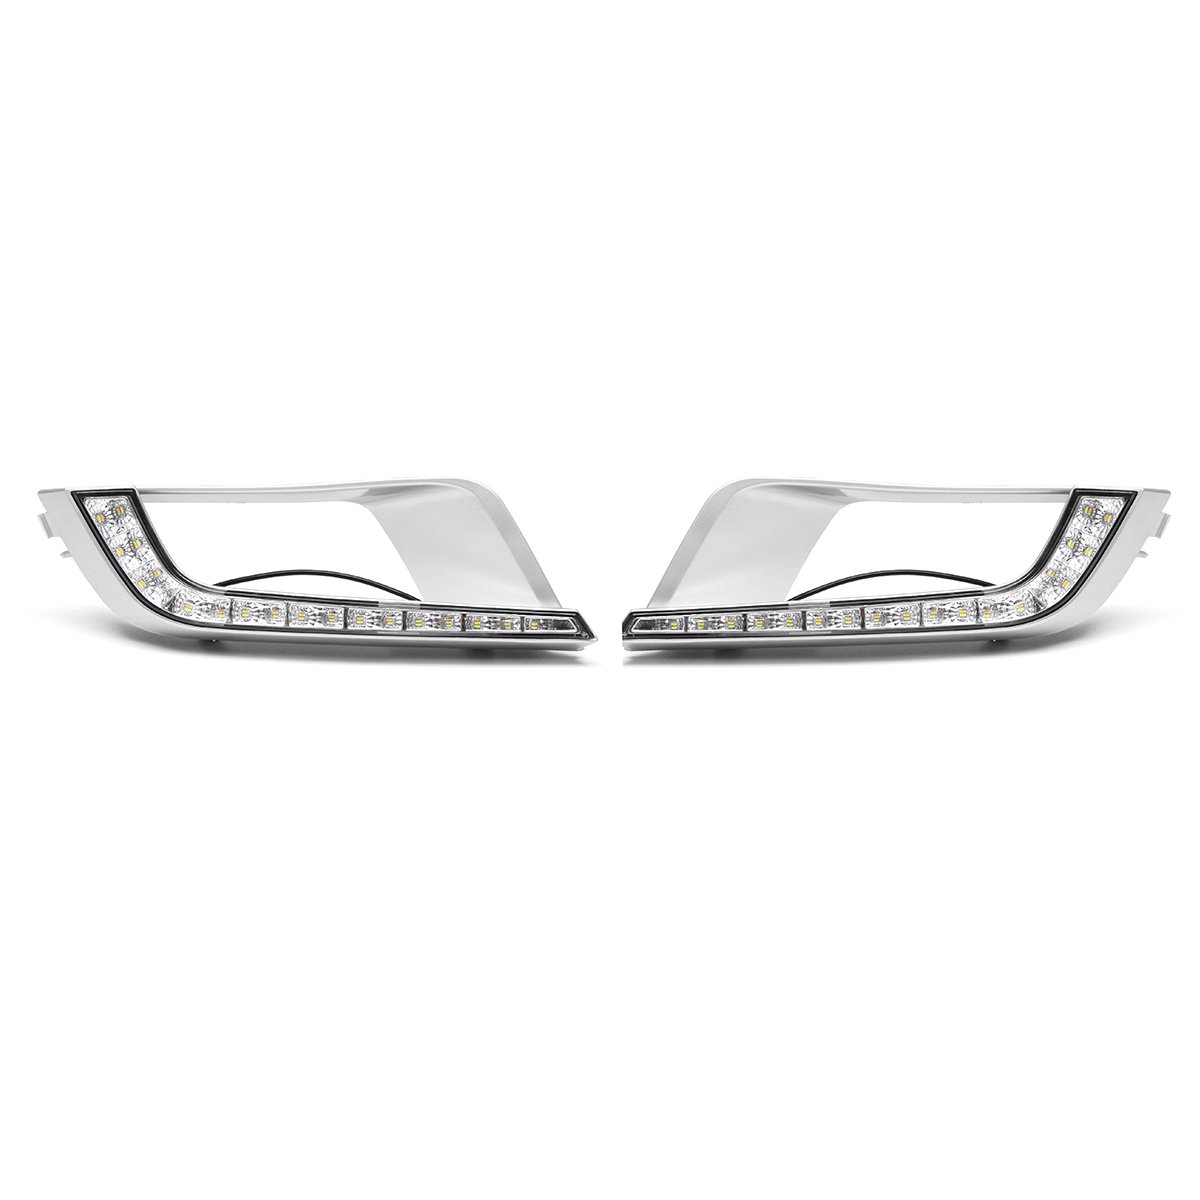 

2Pcs 12V 1A Car LED Daytime Running Lights Fog Lamp for Ford Ranger Wildtrak T6 MK2 2016 17 18